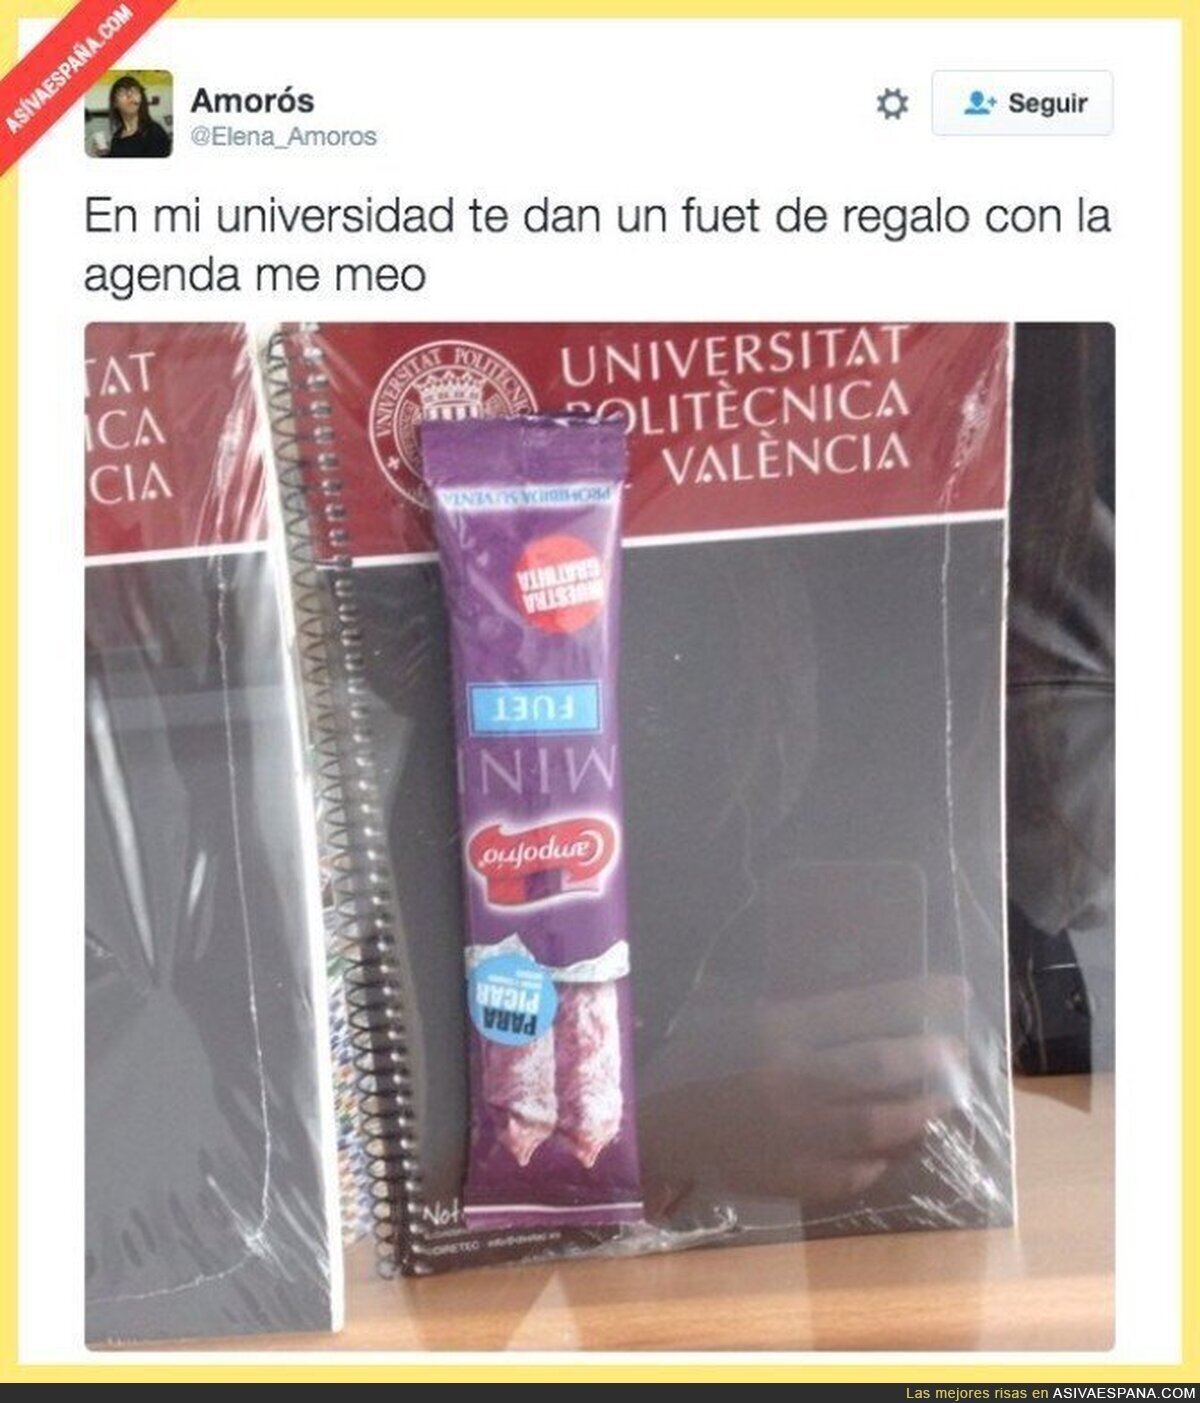 El bonito regalo que te dan en la Universidad Politécnica de Valencia con la agenda